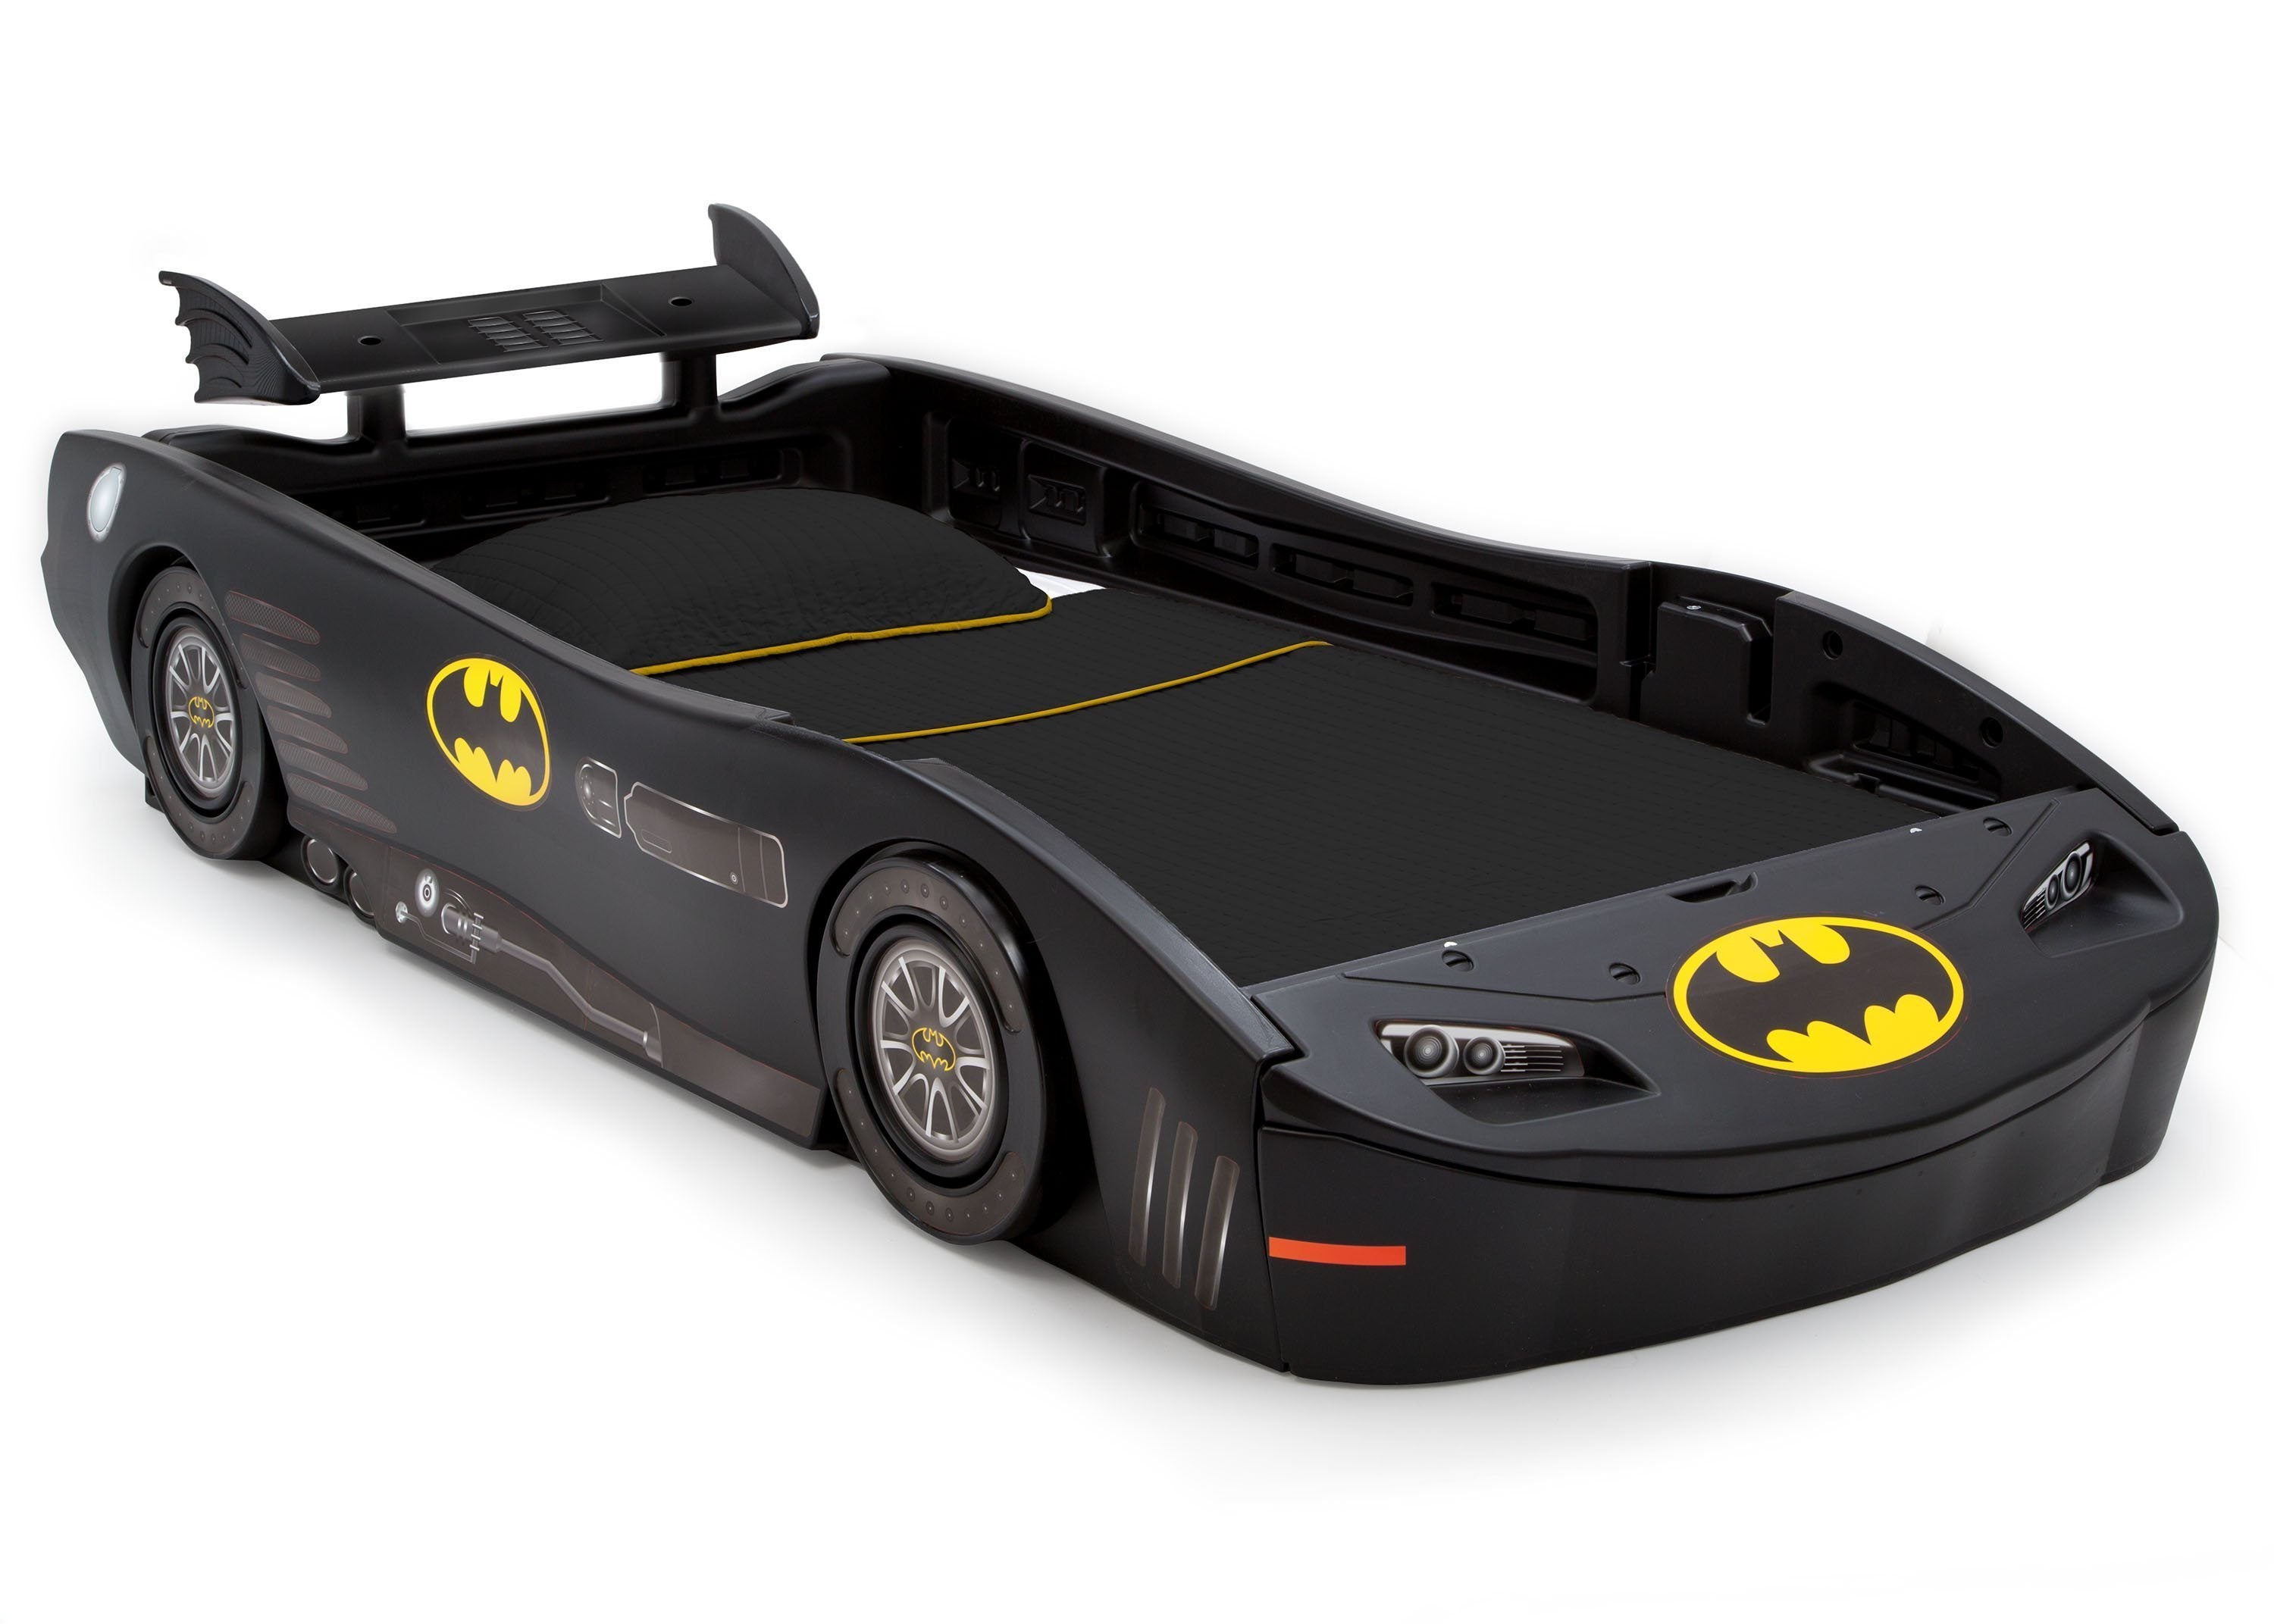 batman car